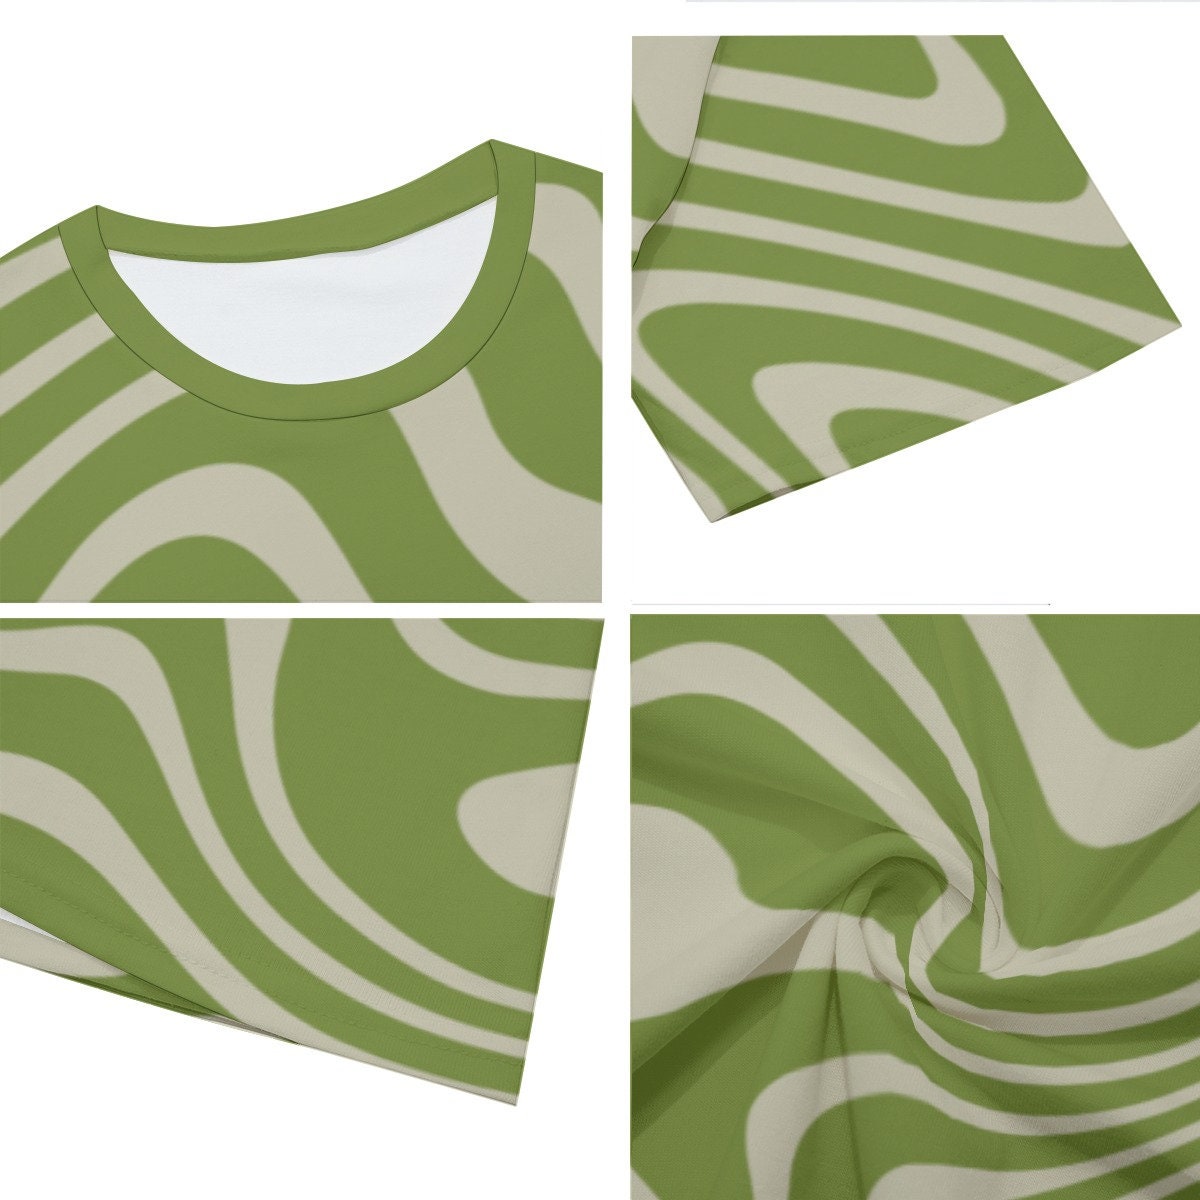 Retro T-Shirt Men, 100% Cotton T-shirt, Men's Green Top, Vintage style t-shirt, 70s Style Top, Stripe T-shirt Men